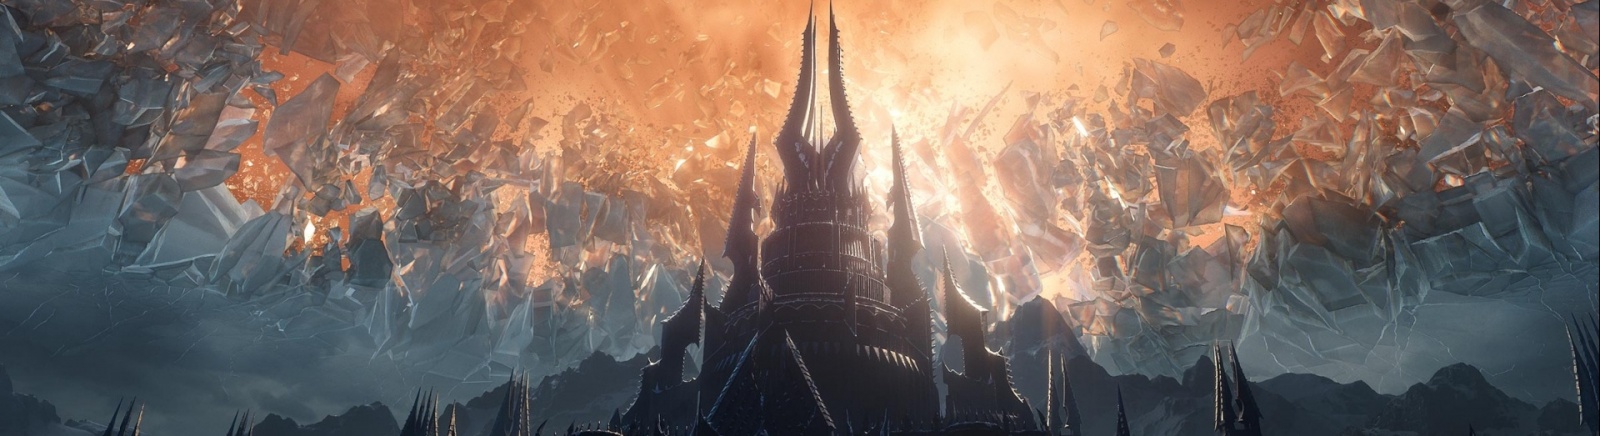 World of Warcraft: Shadowlands дата выхода на PC и Mac в России и мире